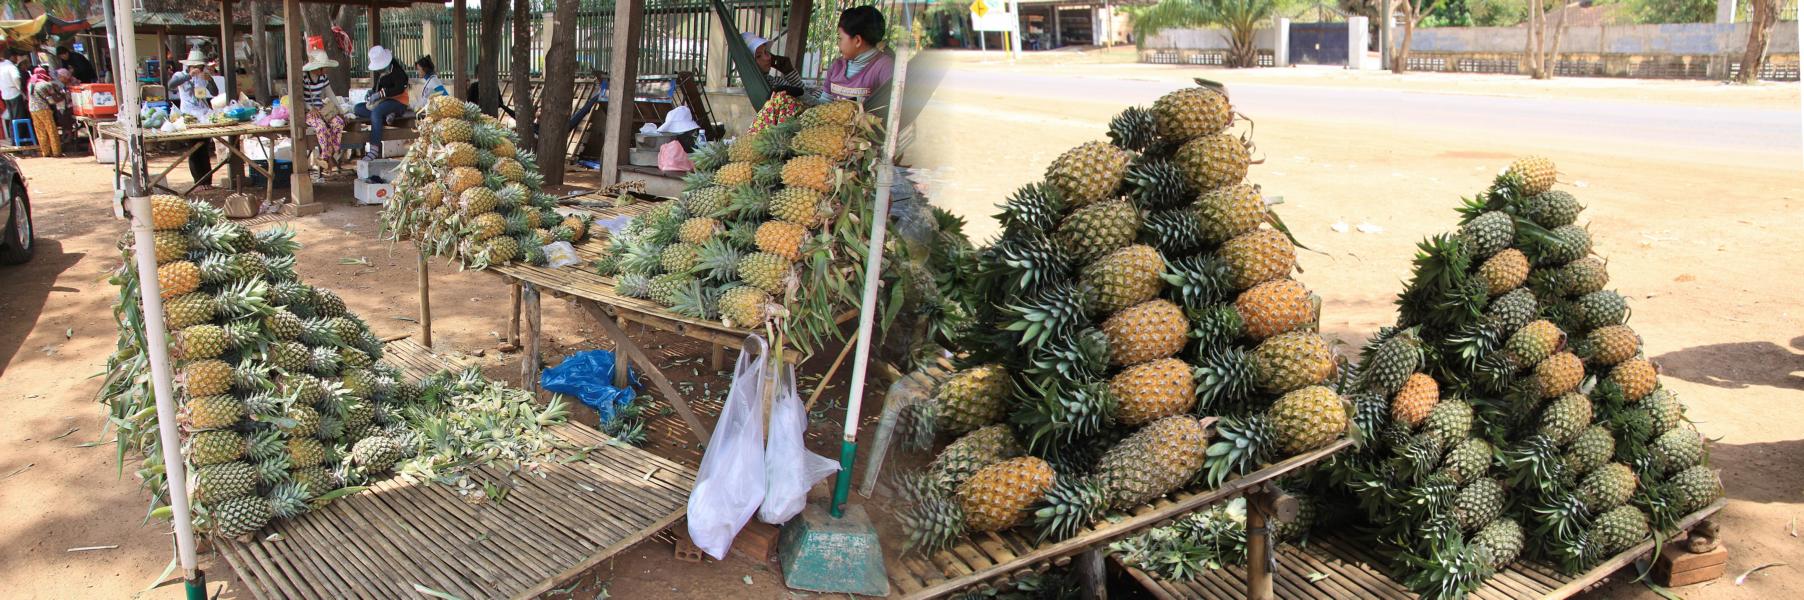 Eine reife Ananas kostete an diesem Fruchtstand 1 US $.